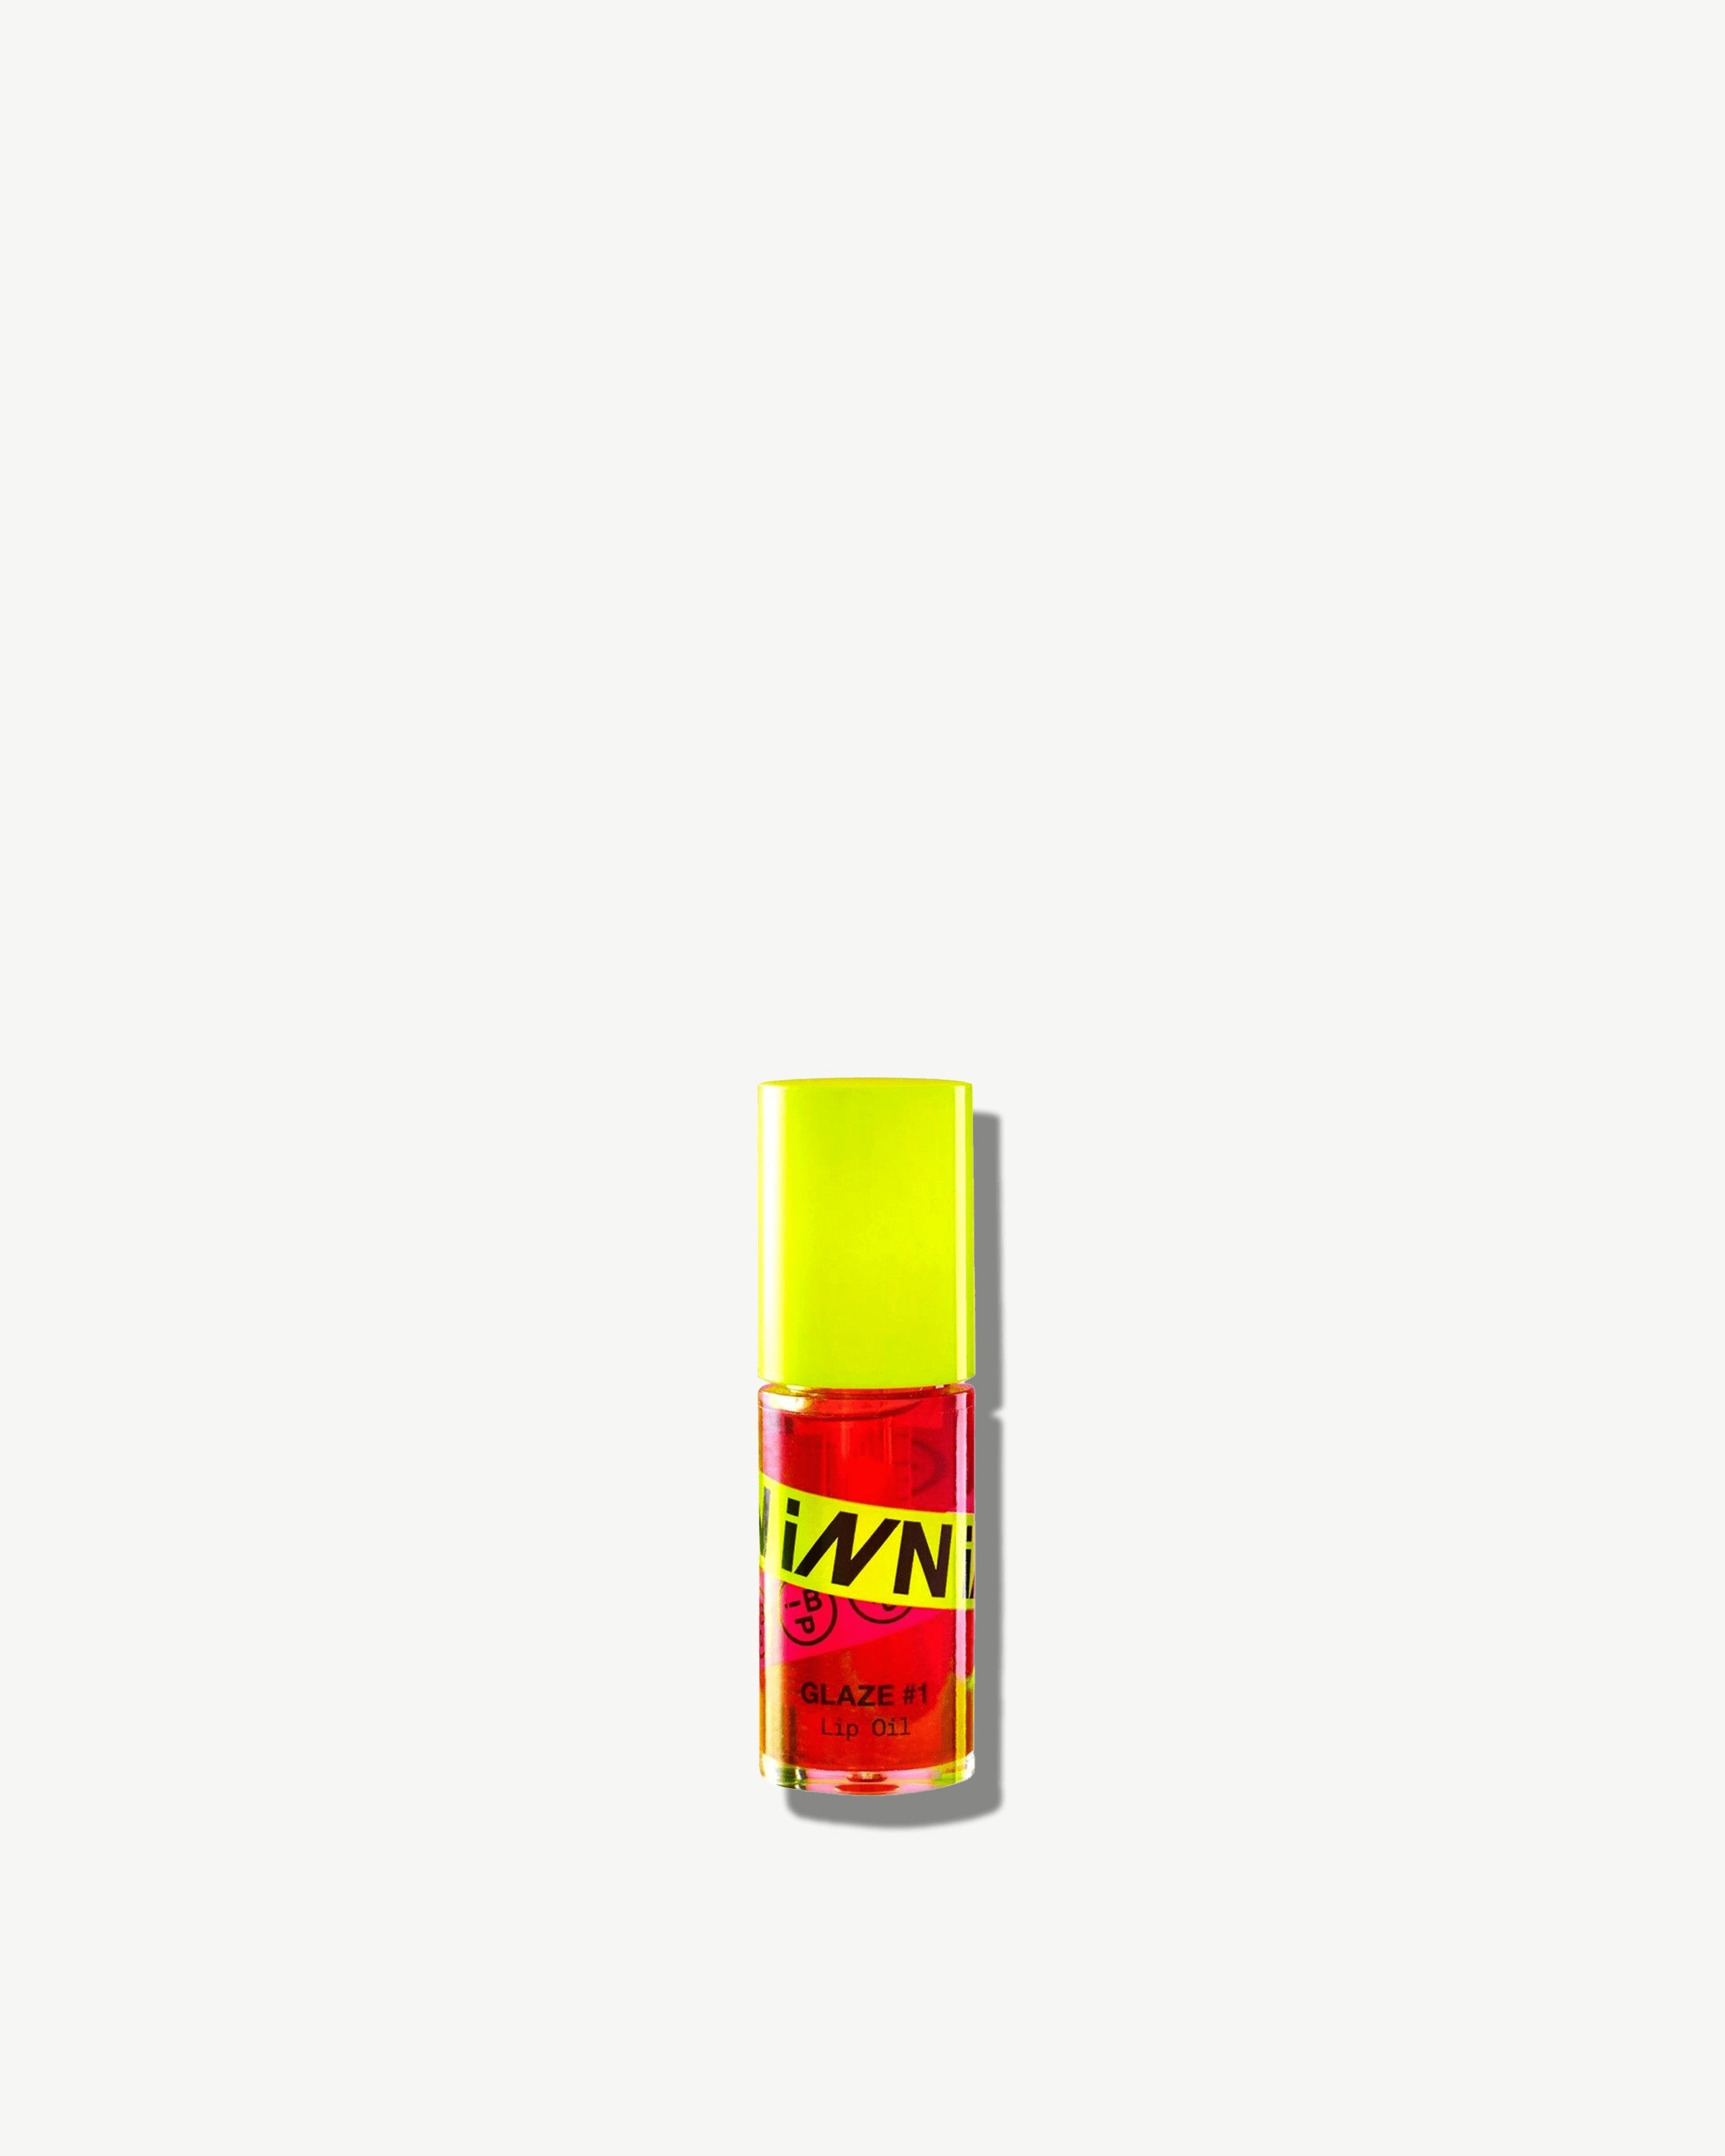 Innbeauty Project Glaze #1 Lip Oil